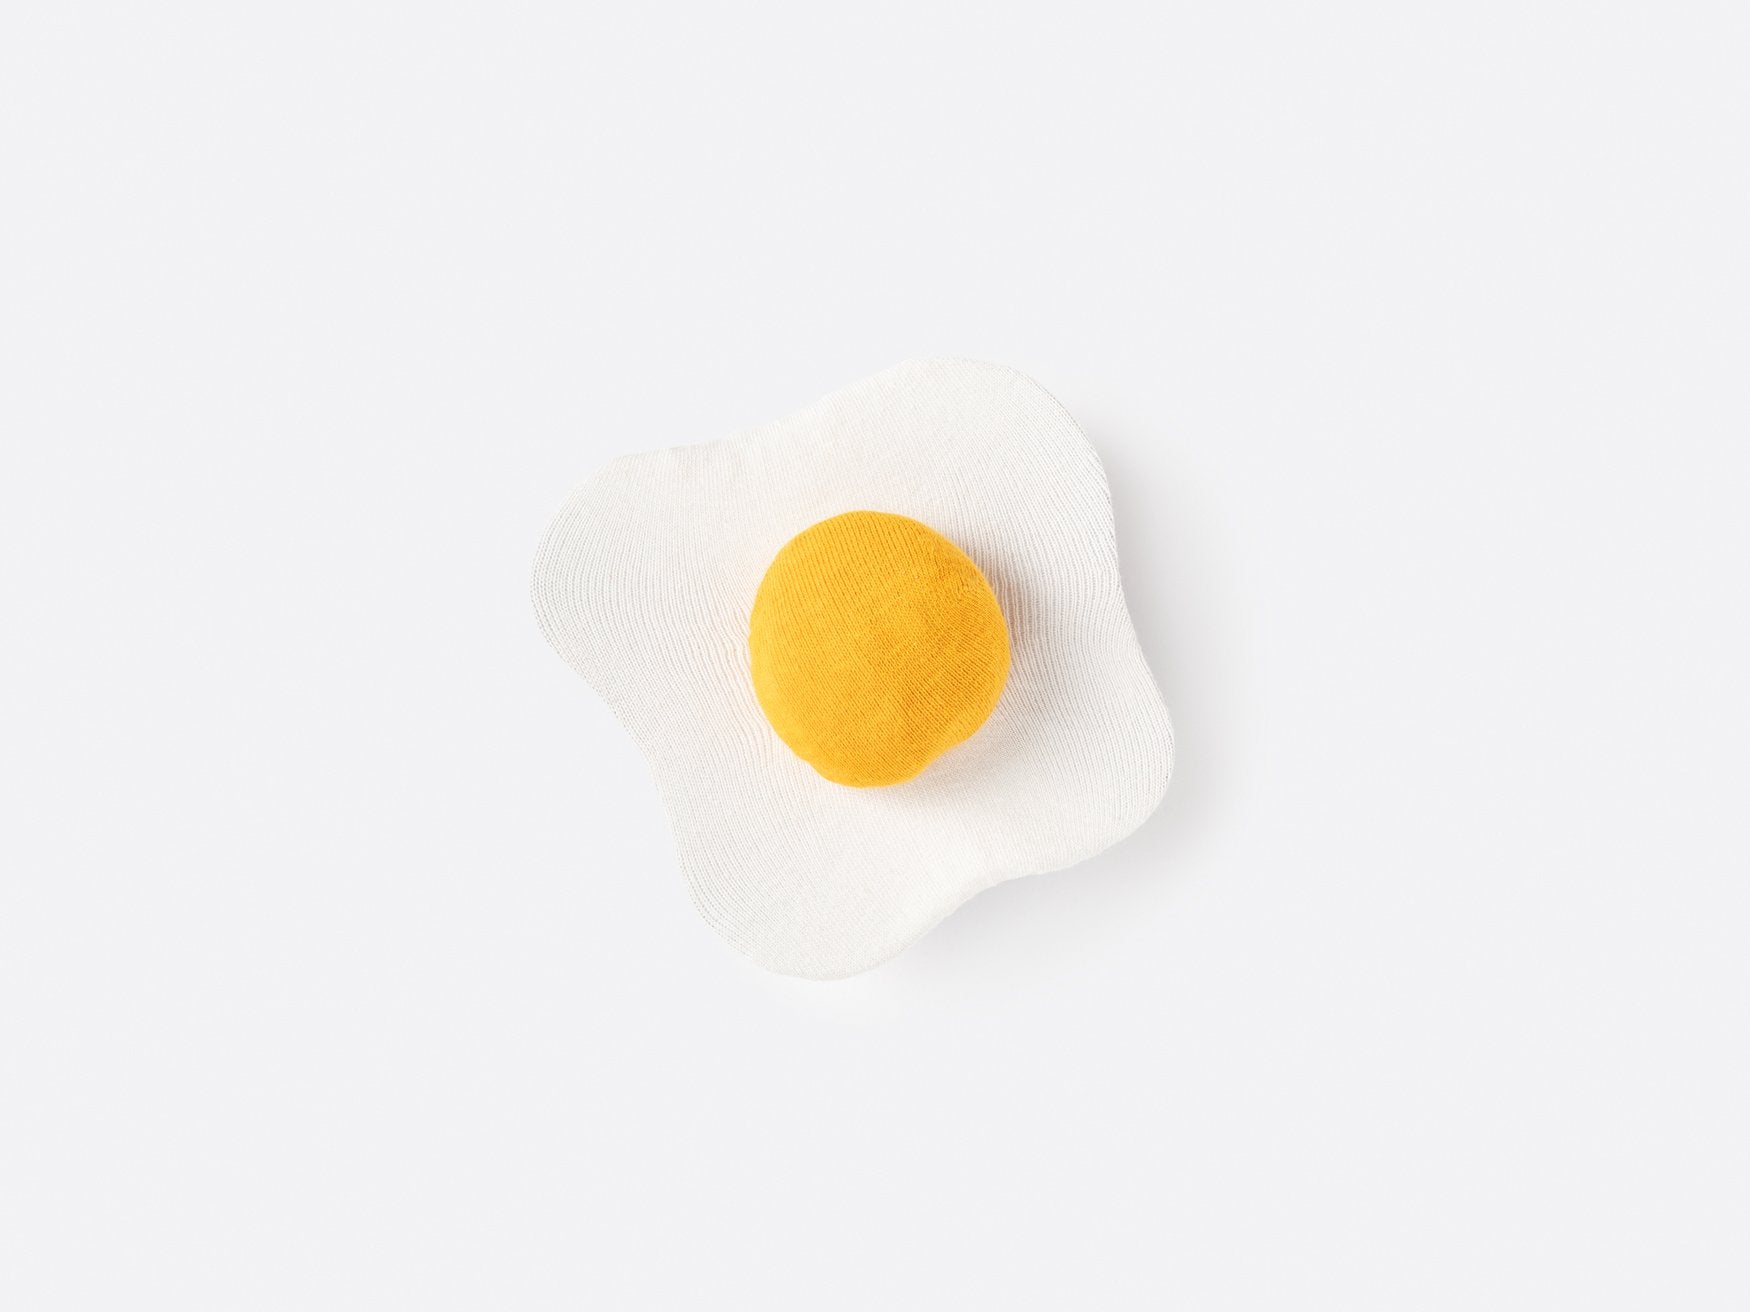 Eat My Socks – Fried Egg (2 pairs of Socks)